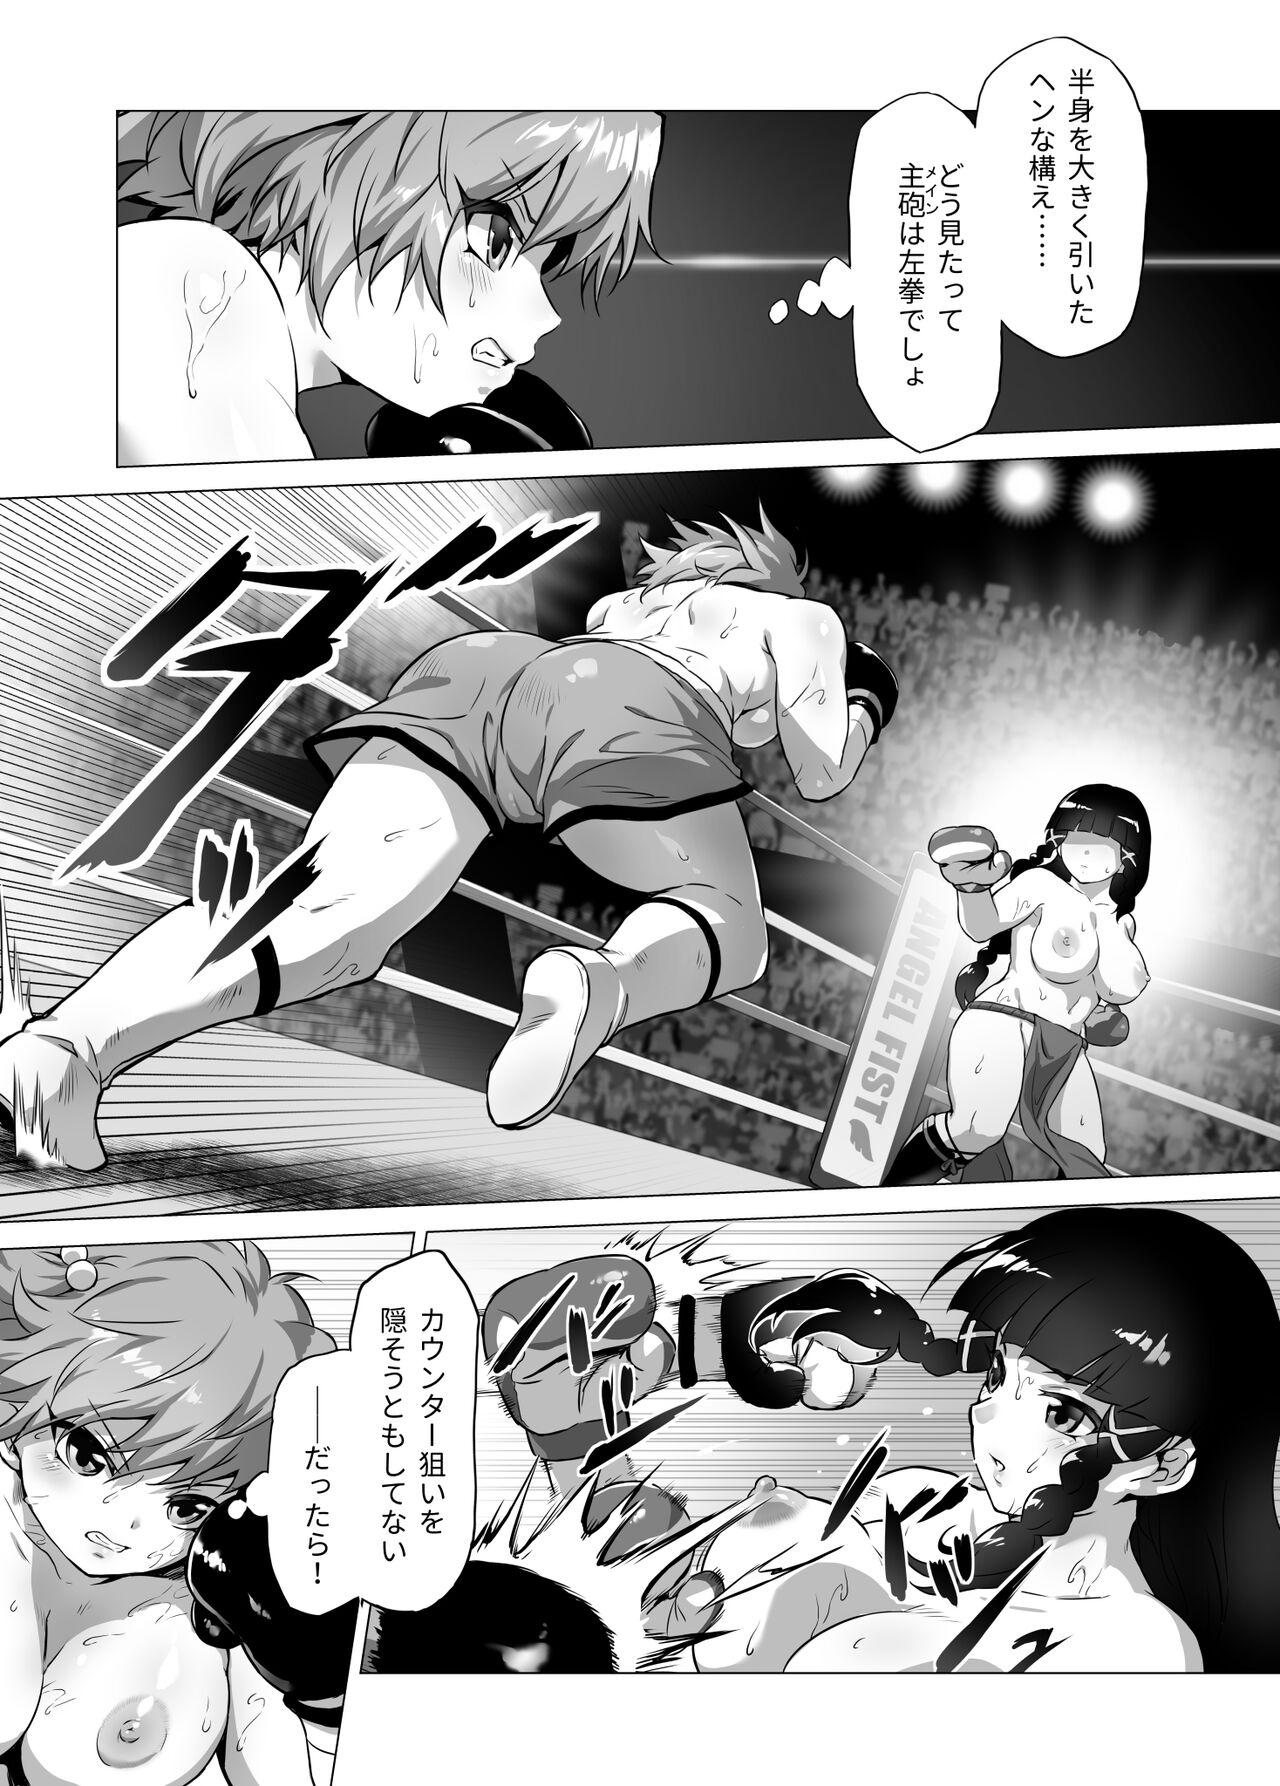 Cam Girl mahiro STANDUP! Manga-hen Boobs - Page 7